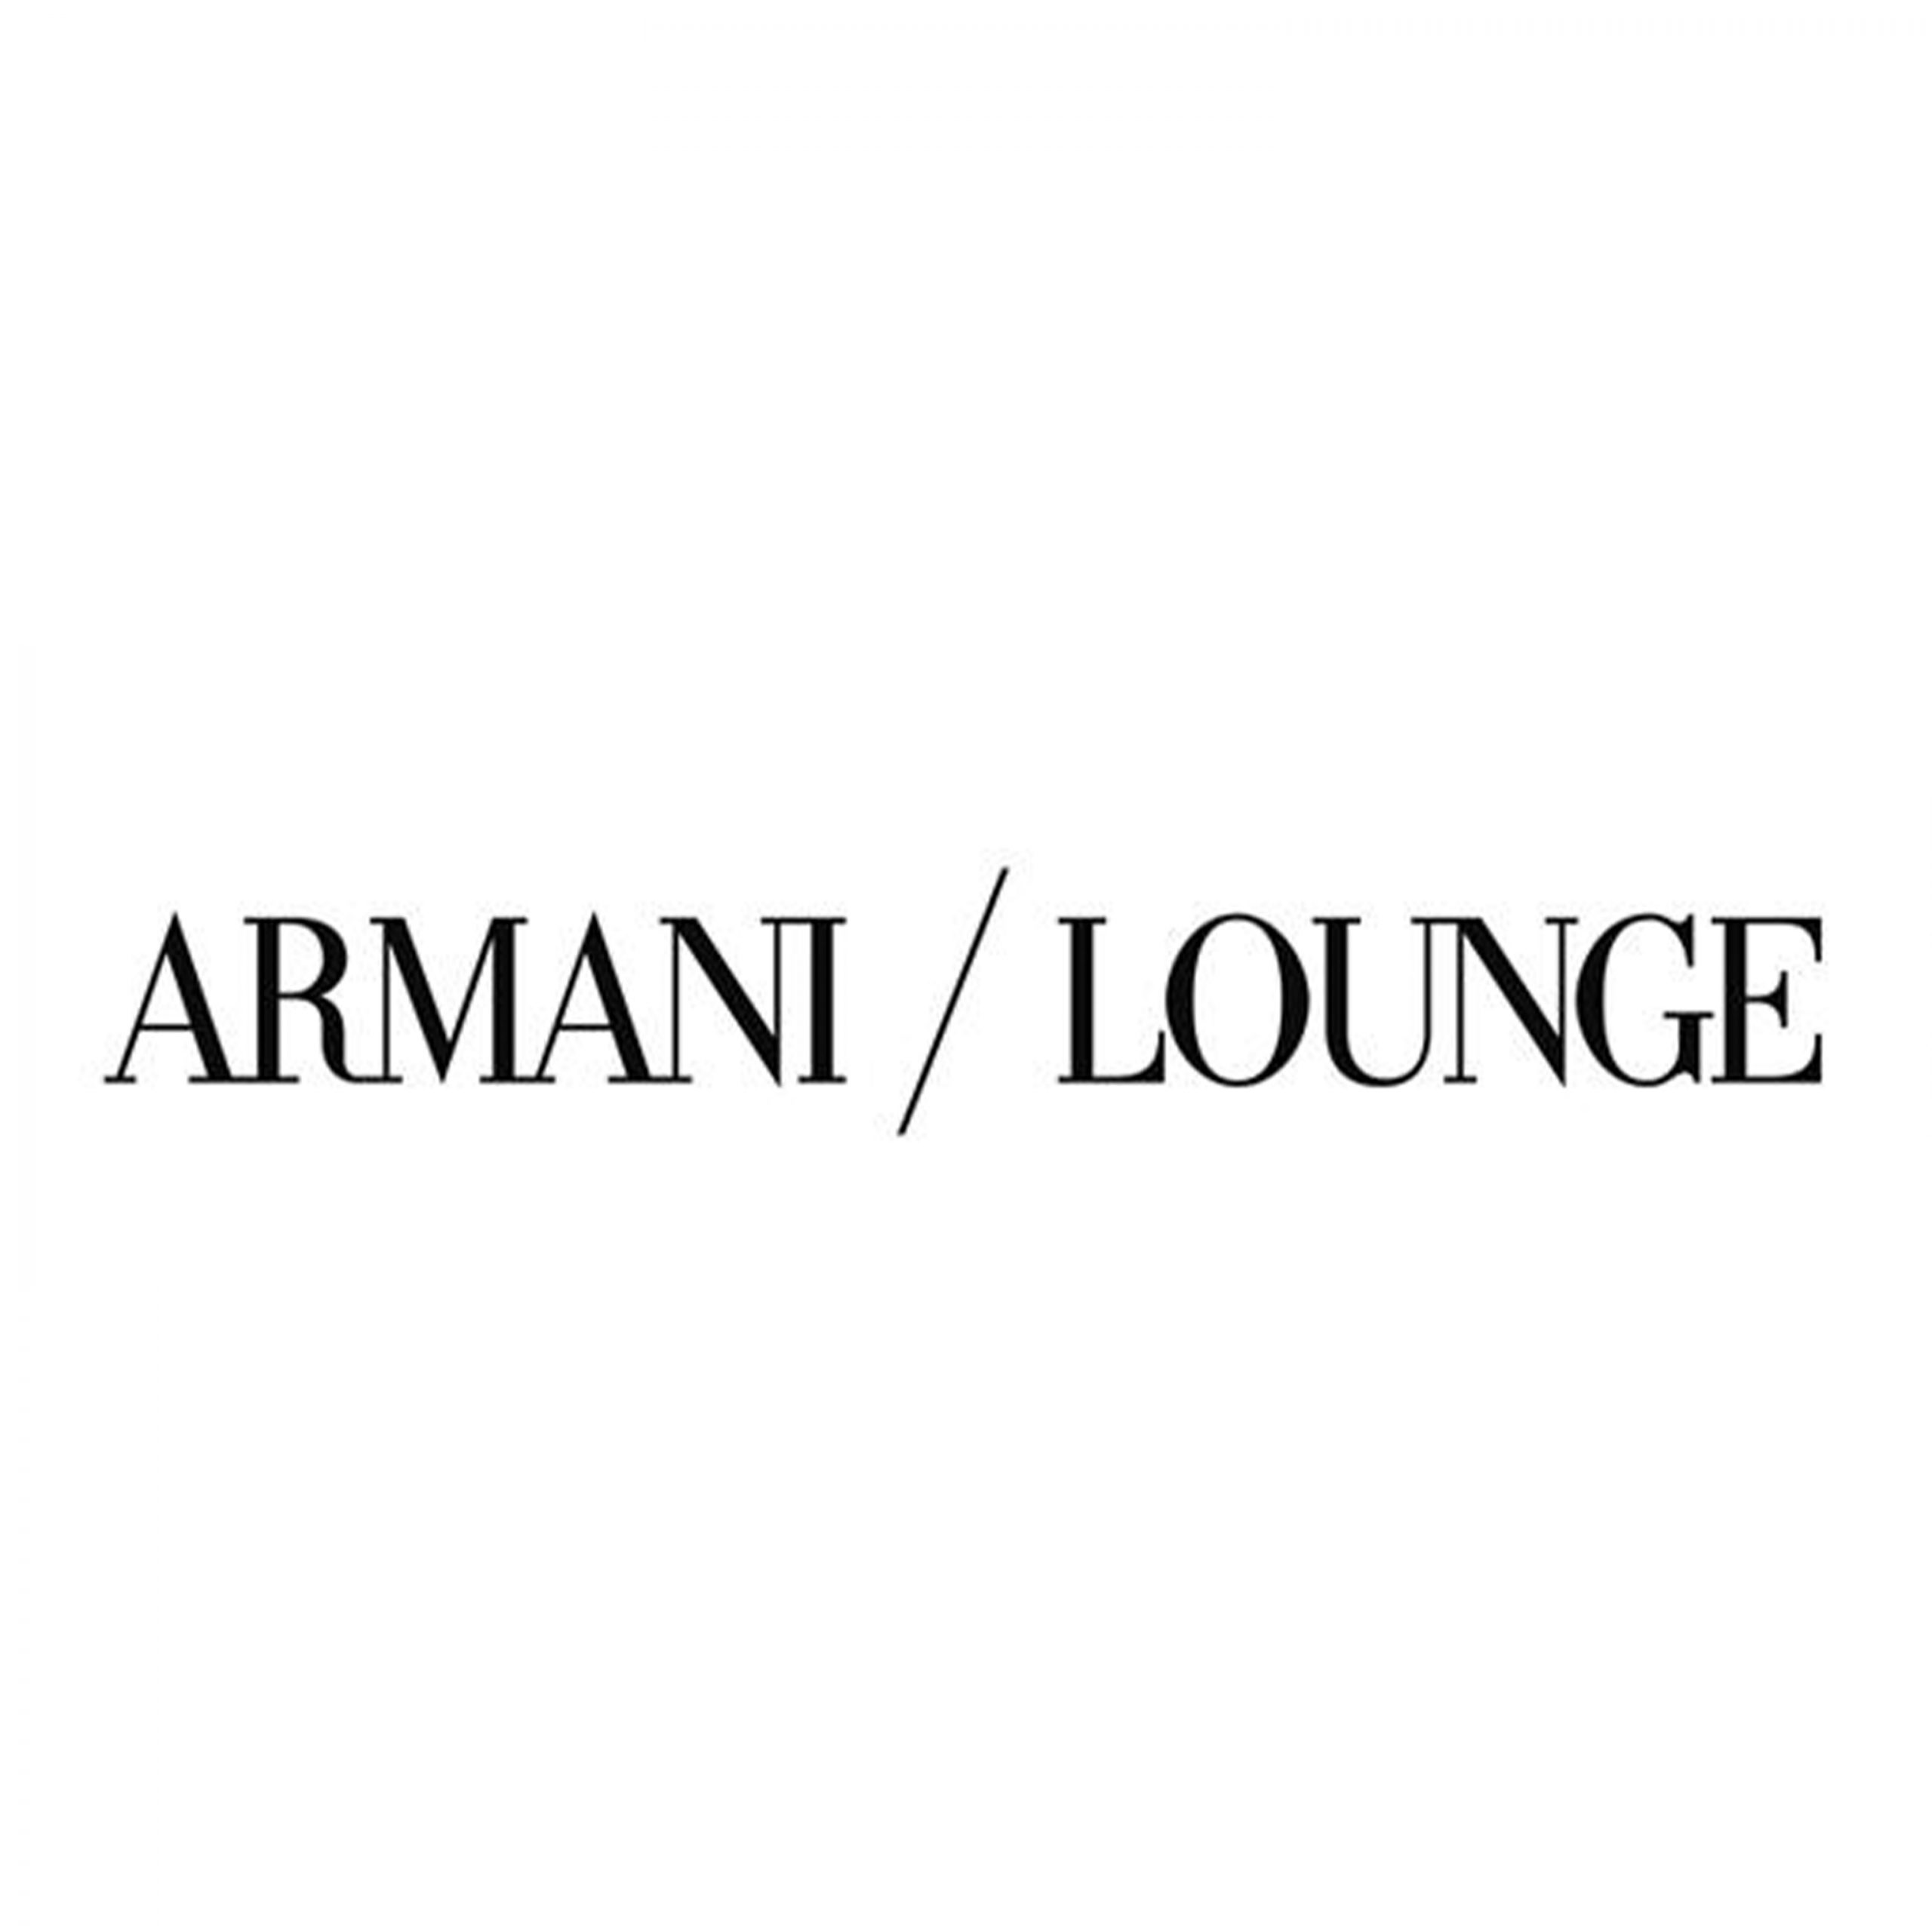 Armani/Lounge - Coming Soon in UAE